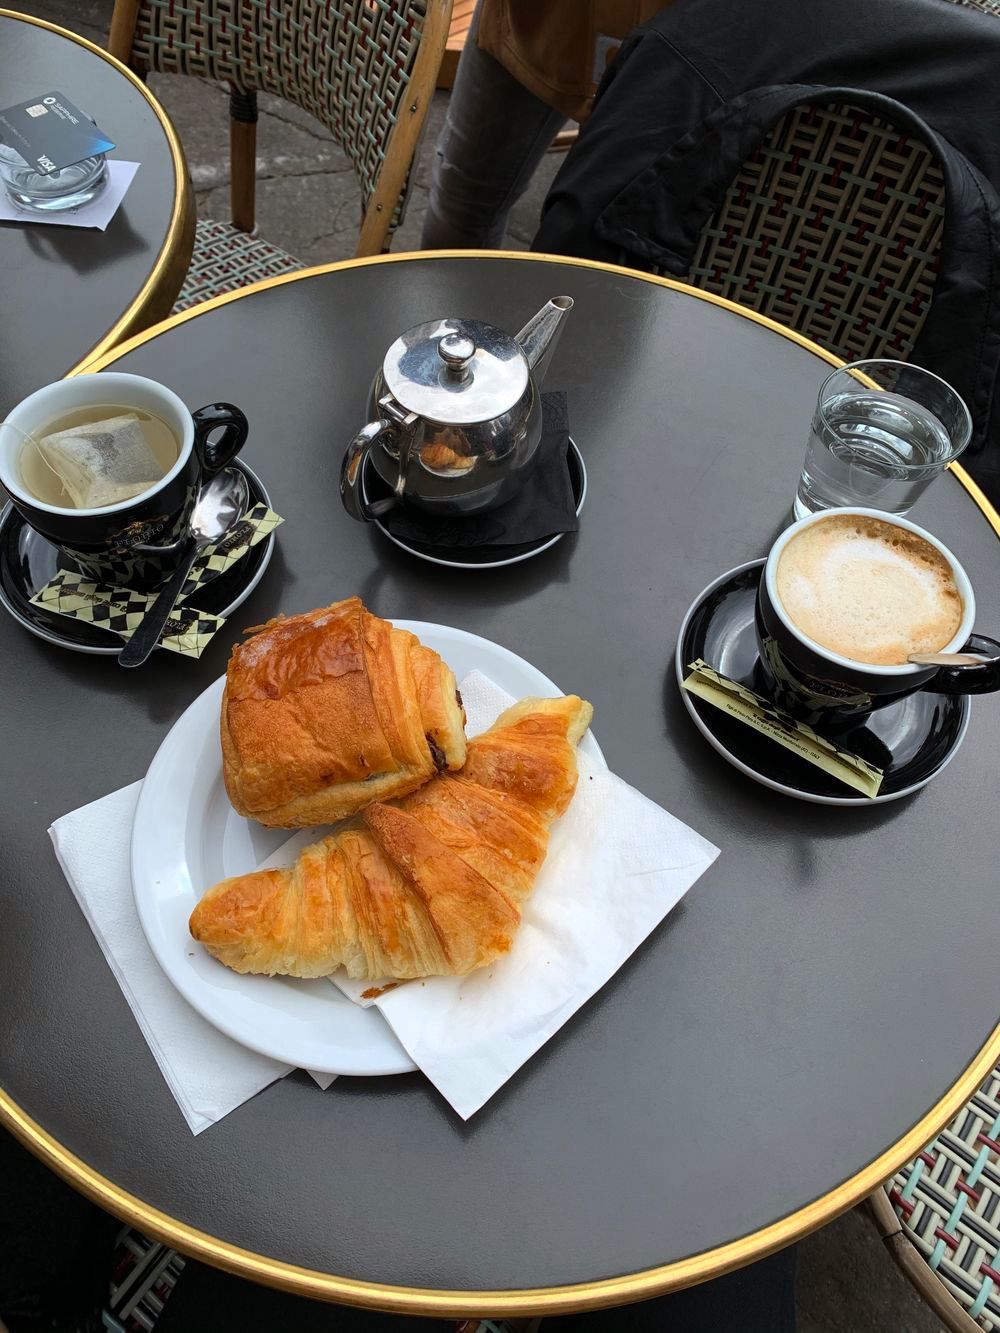 Paris cafe culture IMG_9891